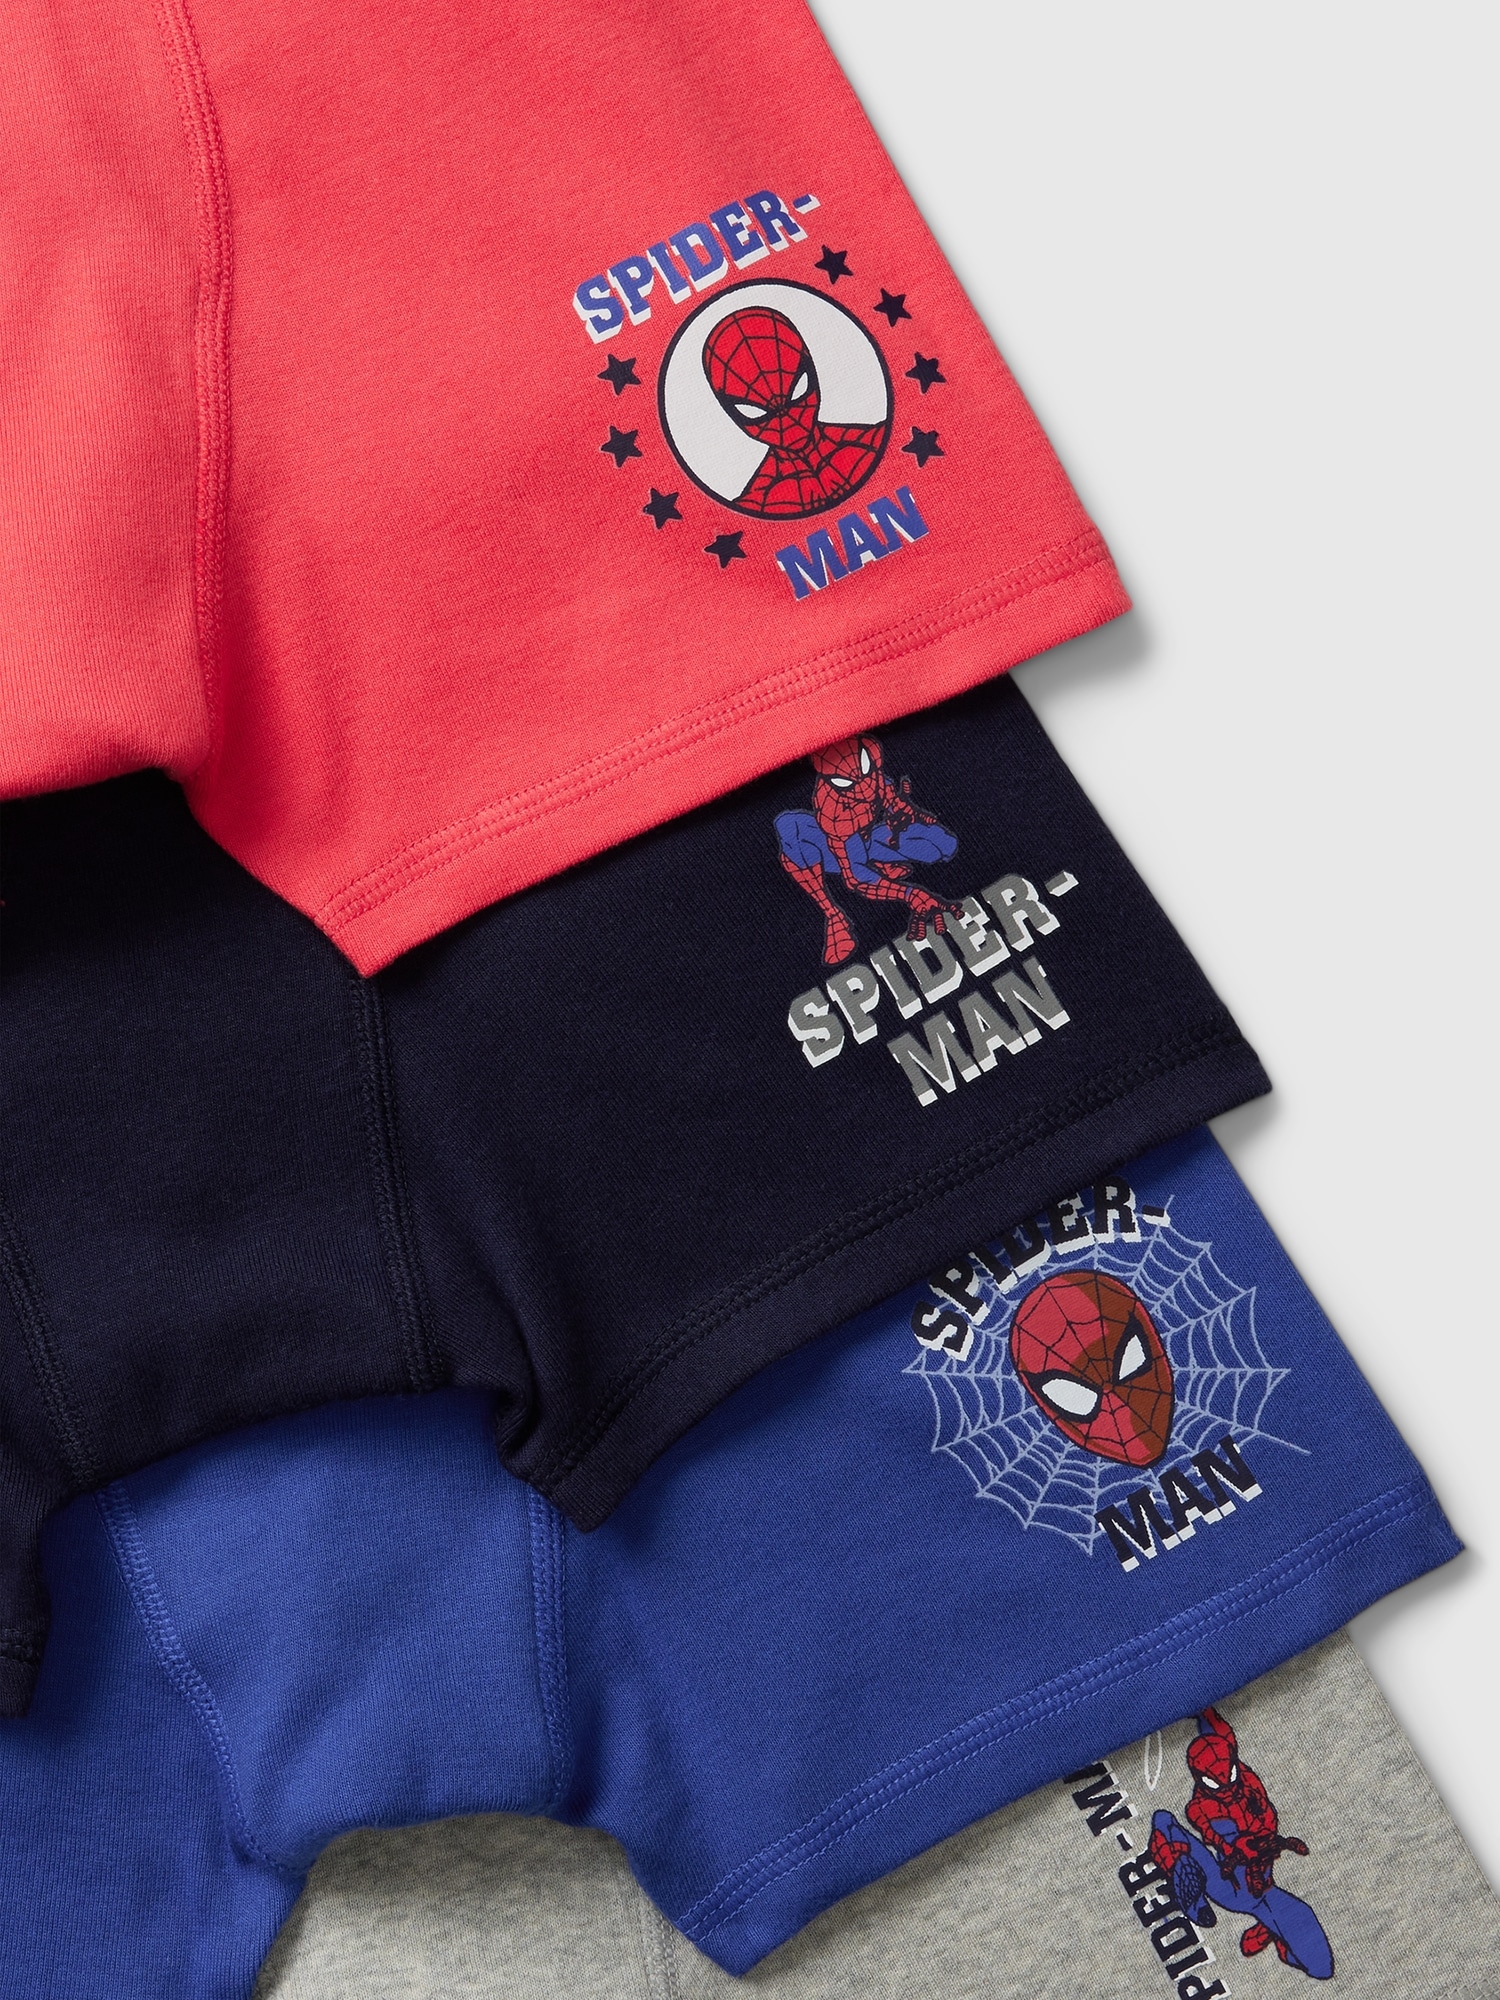 Marvel Mens' 2 Pack Spider-Man Spidey Underwear Briefs